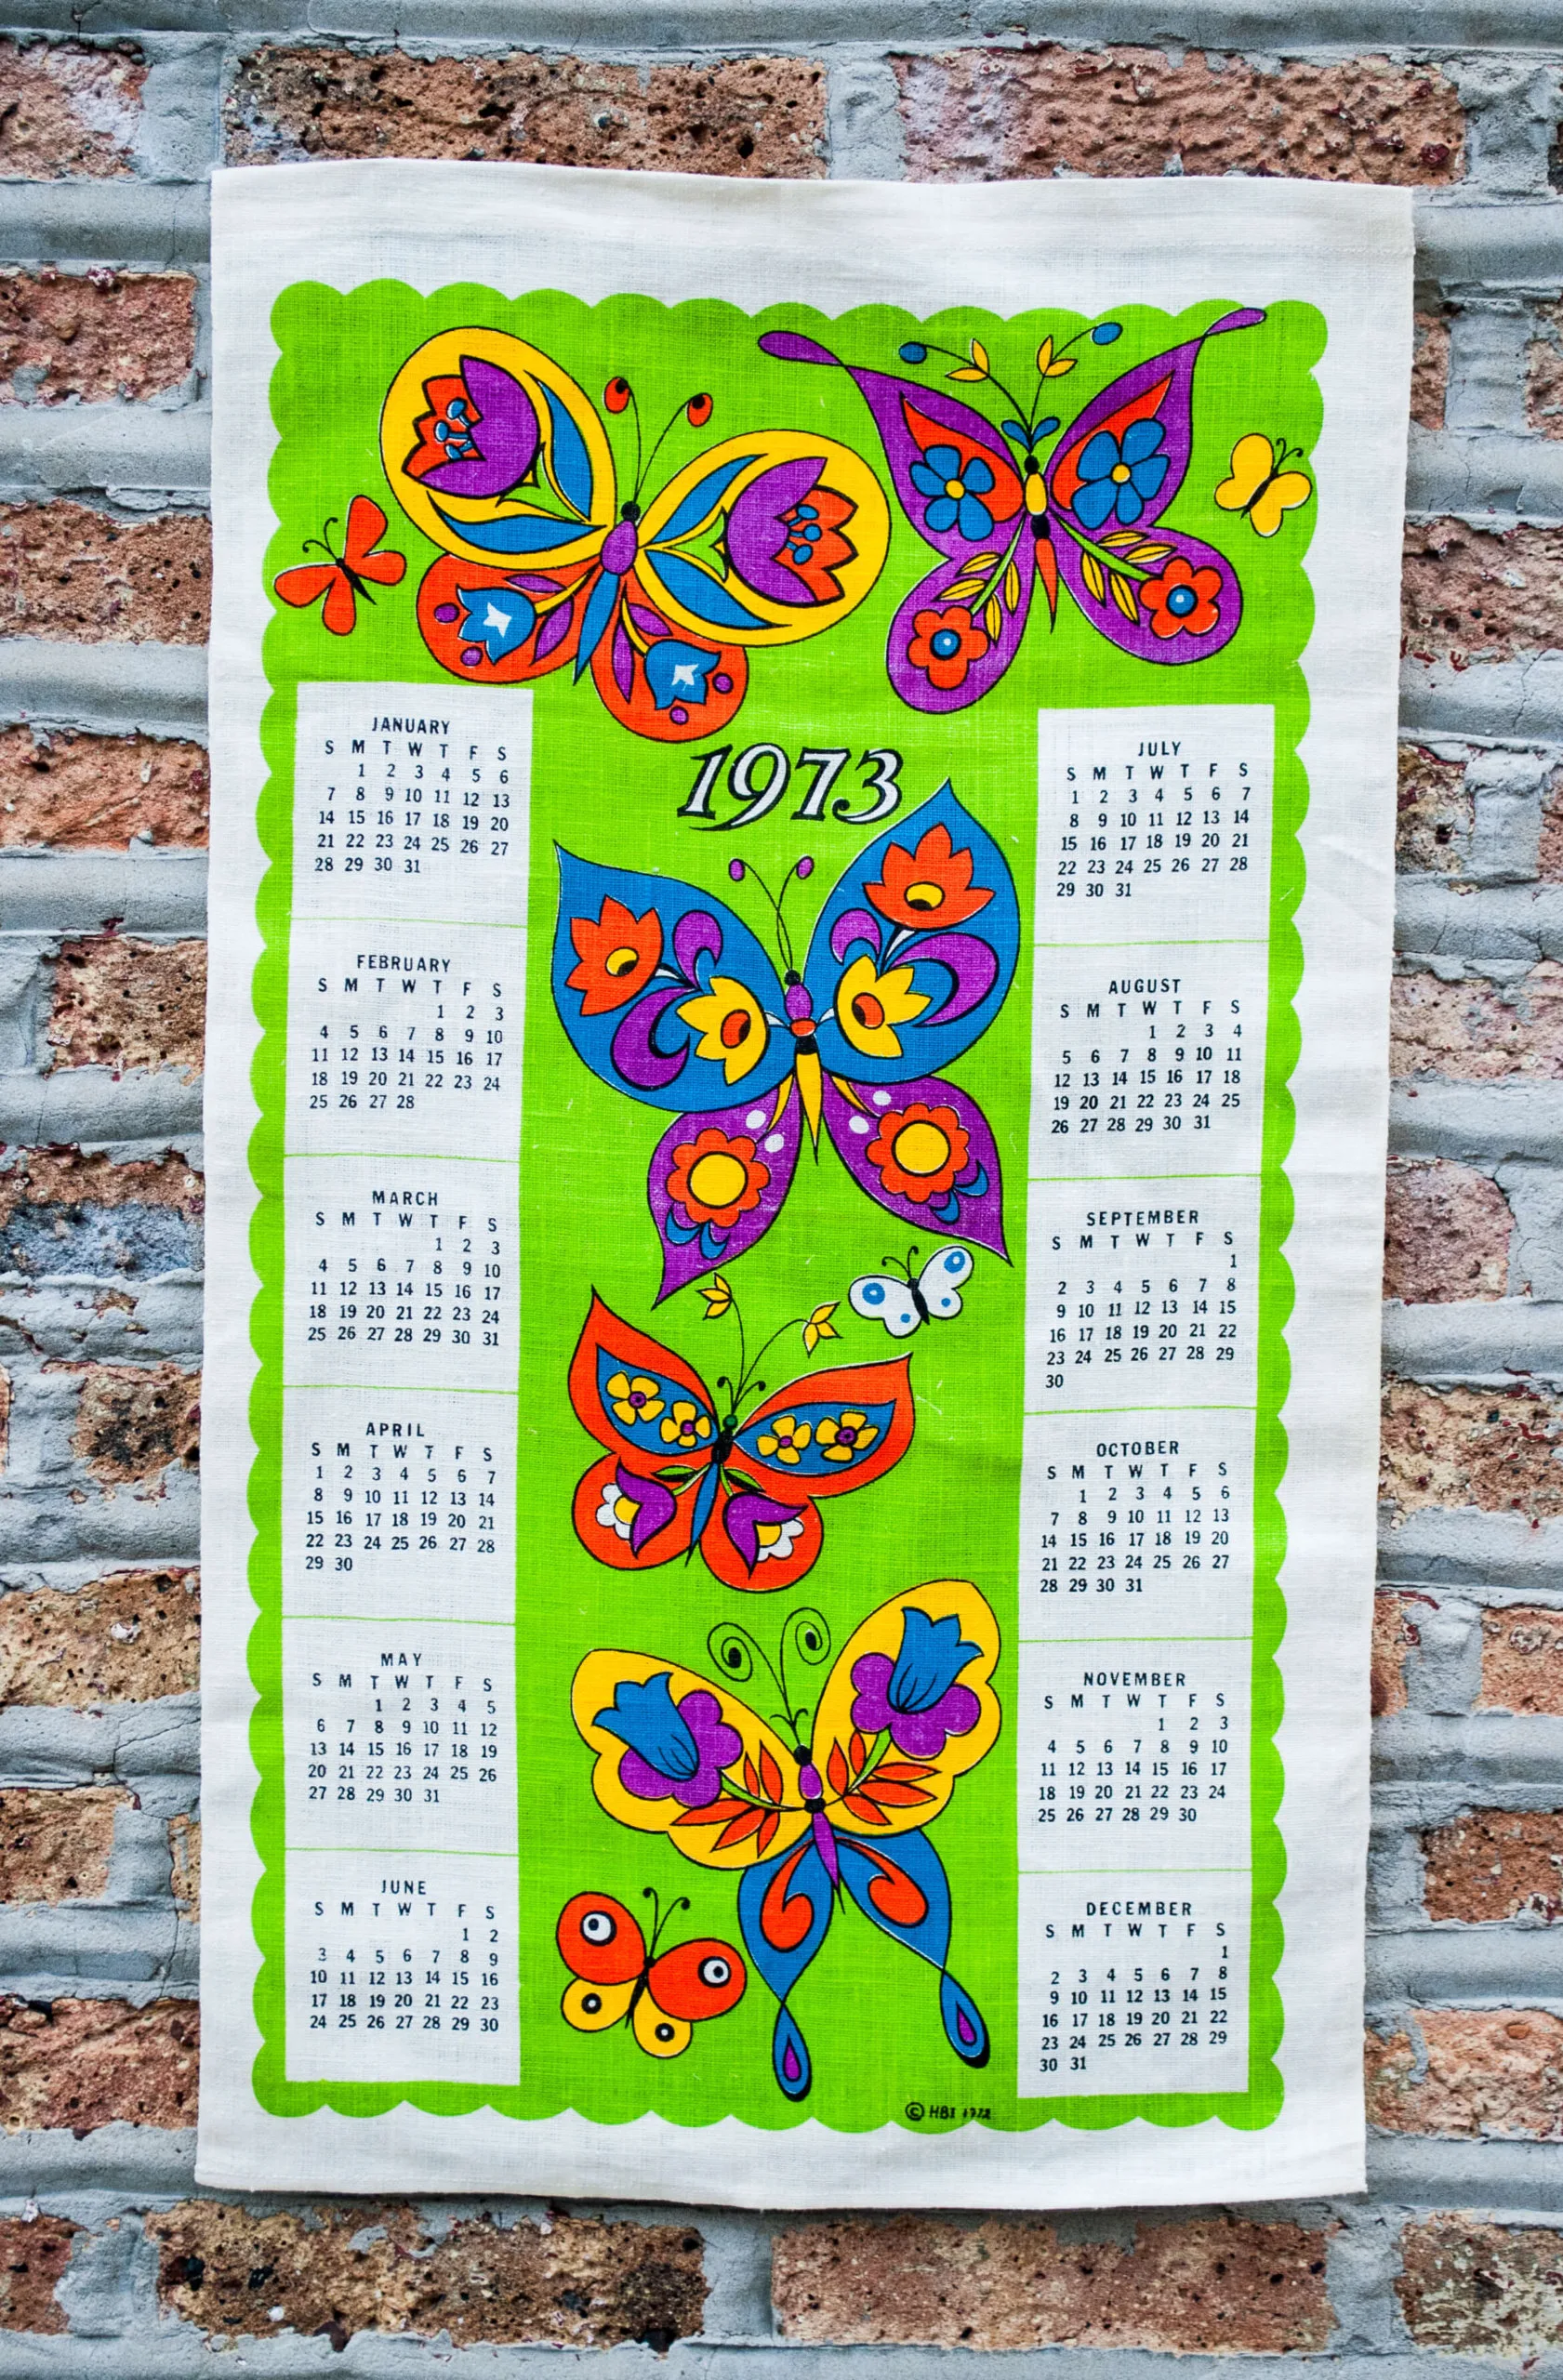 Butterflies vintage linen fabric calendars from 1973